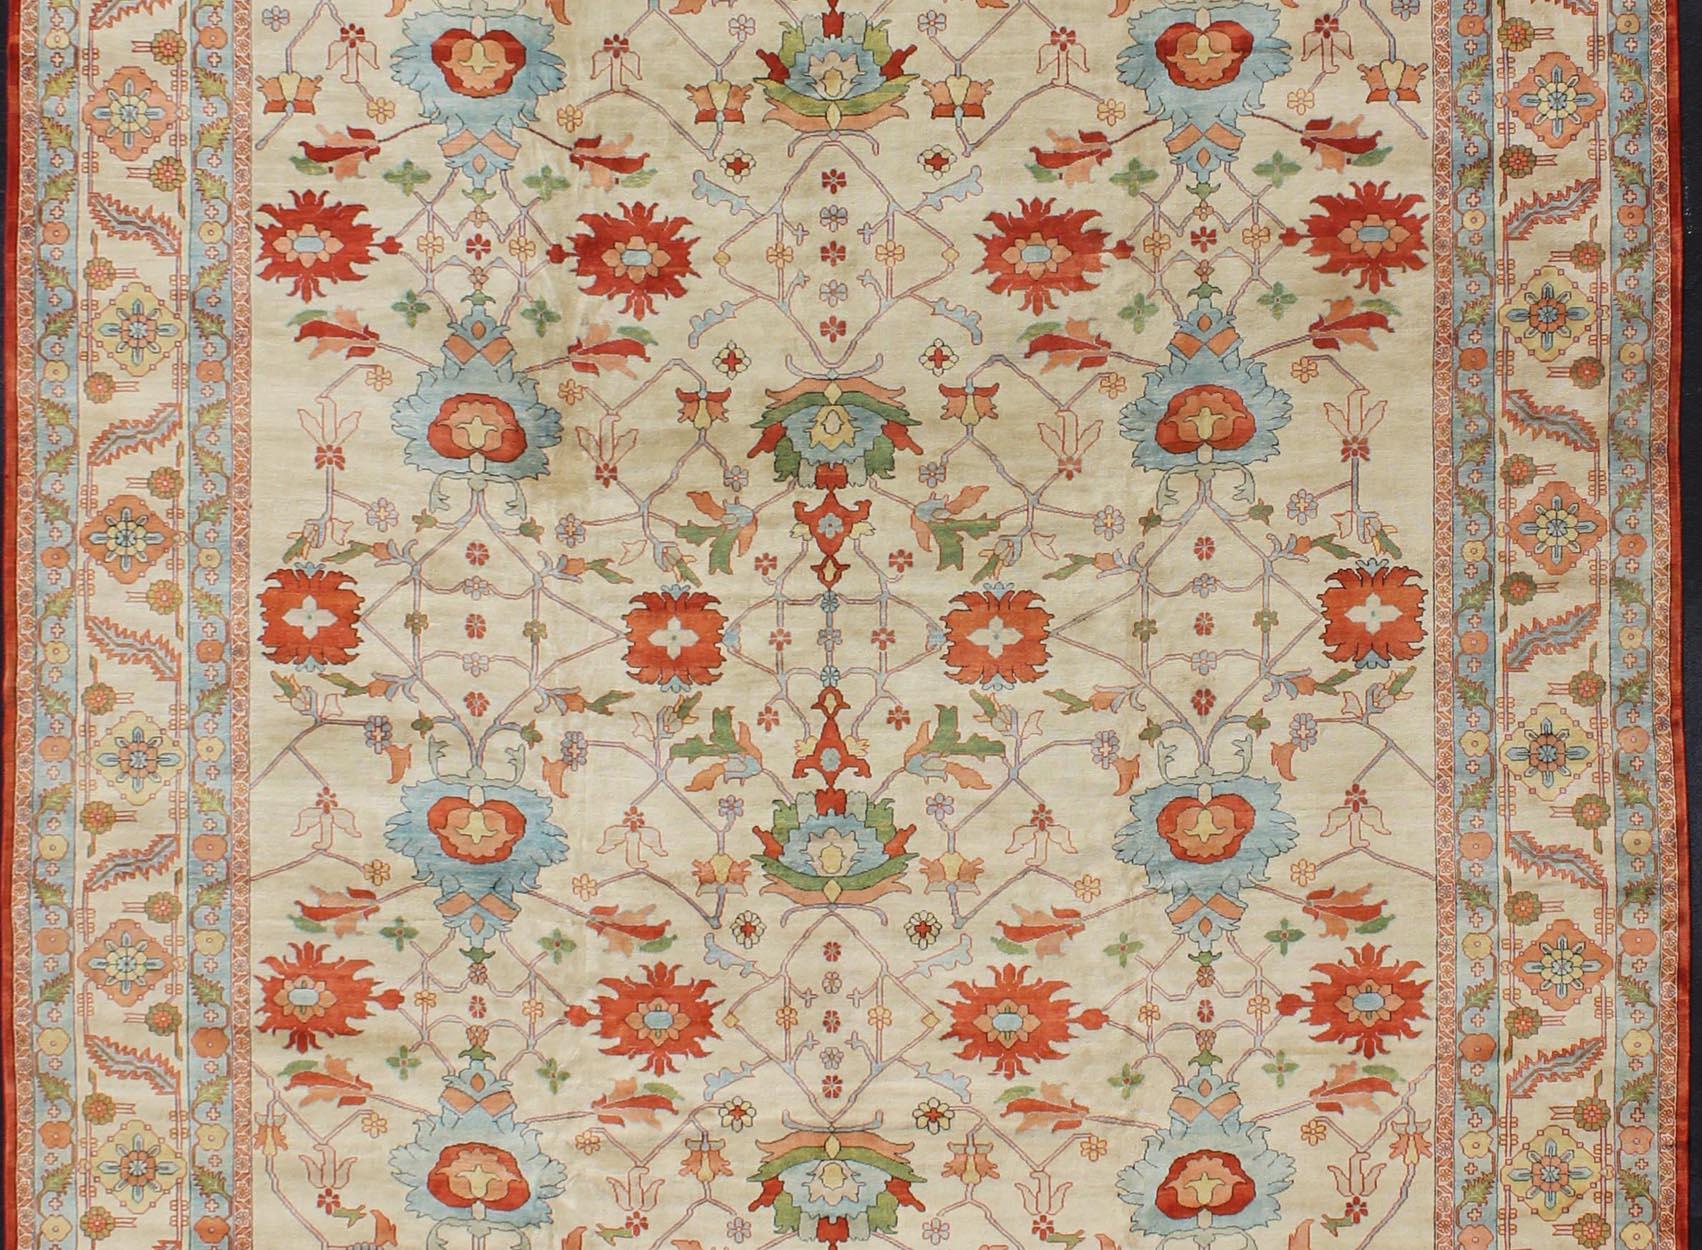 Keivan Woven Arts Sehr großer persischer Serapi-Teppich mit Allover-Muster auf elfenbeinfarbenem Hintergrund. Keivan Woven Arts Teppich KBE-EB-600241, Herkunftsland / Art: Iran / Serapi, um 1990.

Maße: 16'8 x 28'11.

Serapi-Teppiche sind als die